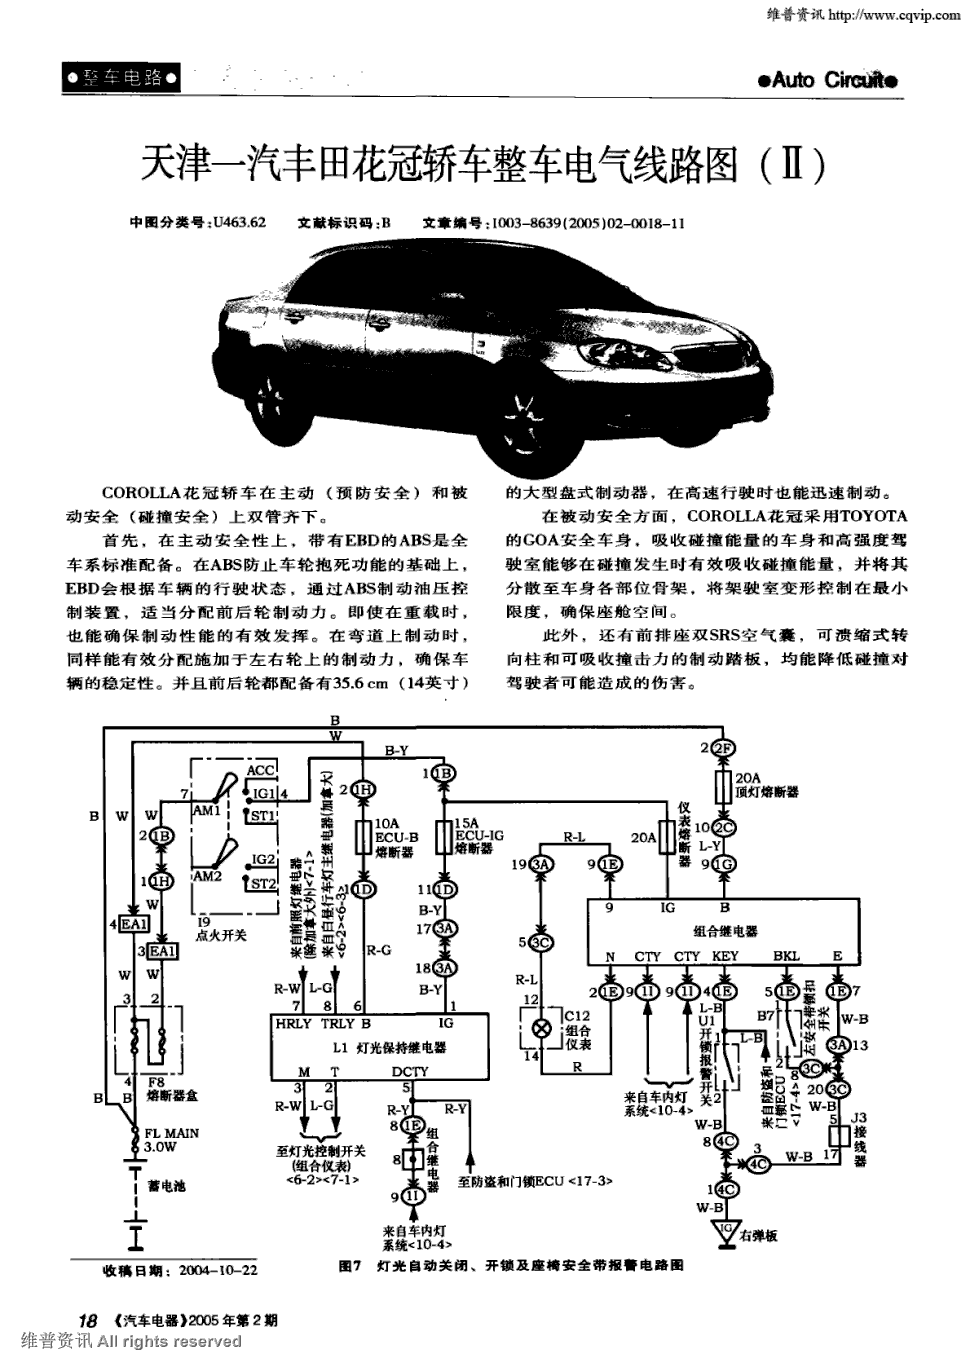 《汽车电器》2005年第2期 18-28,共11页张凤山